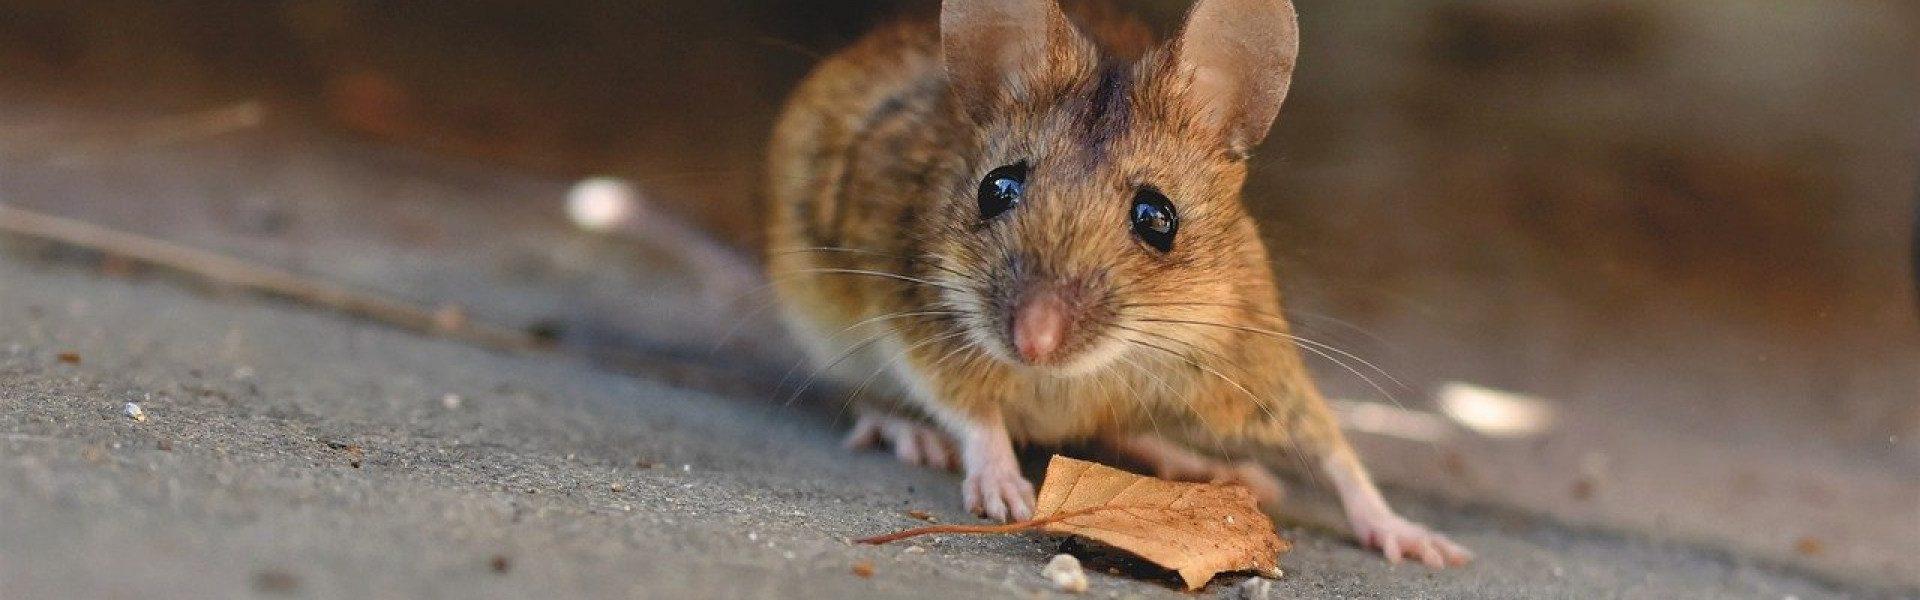 L'extermination de rats et souris en milieu urbain : une priorité pour les collectivités !